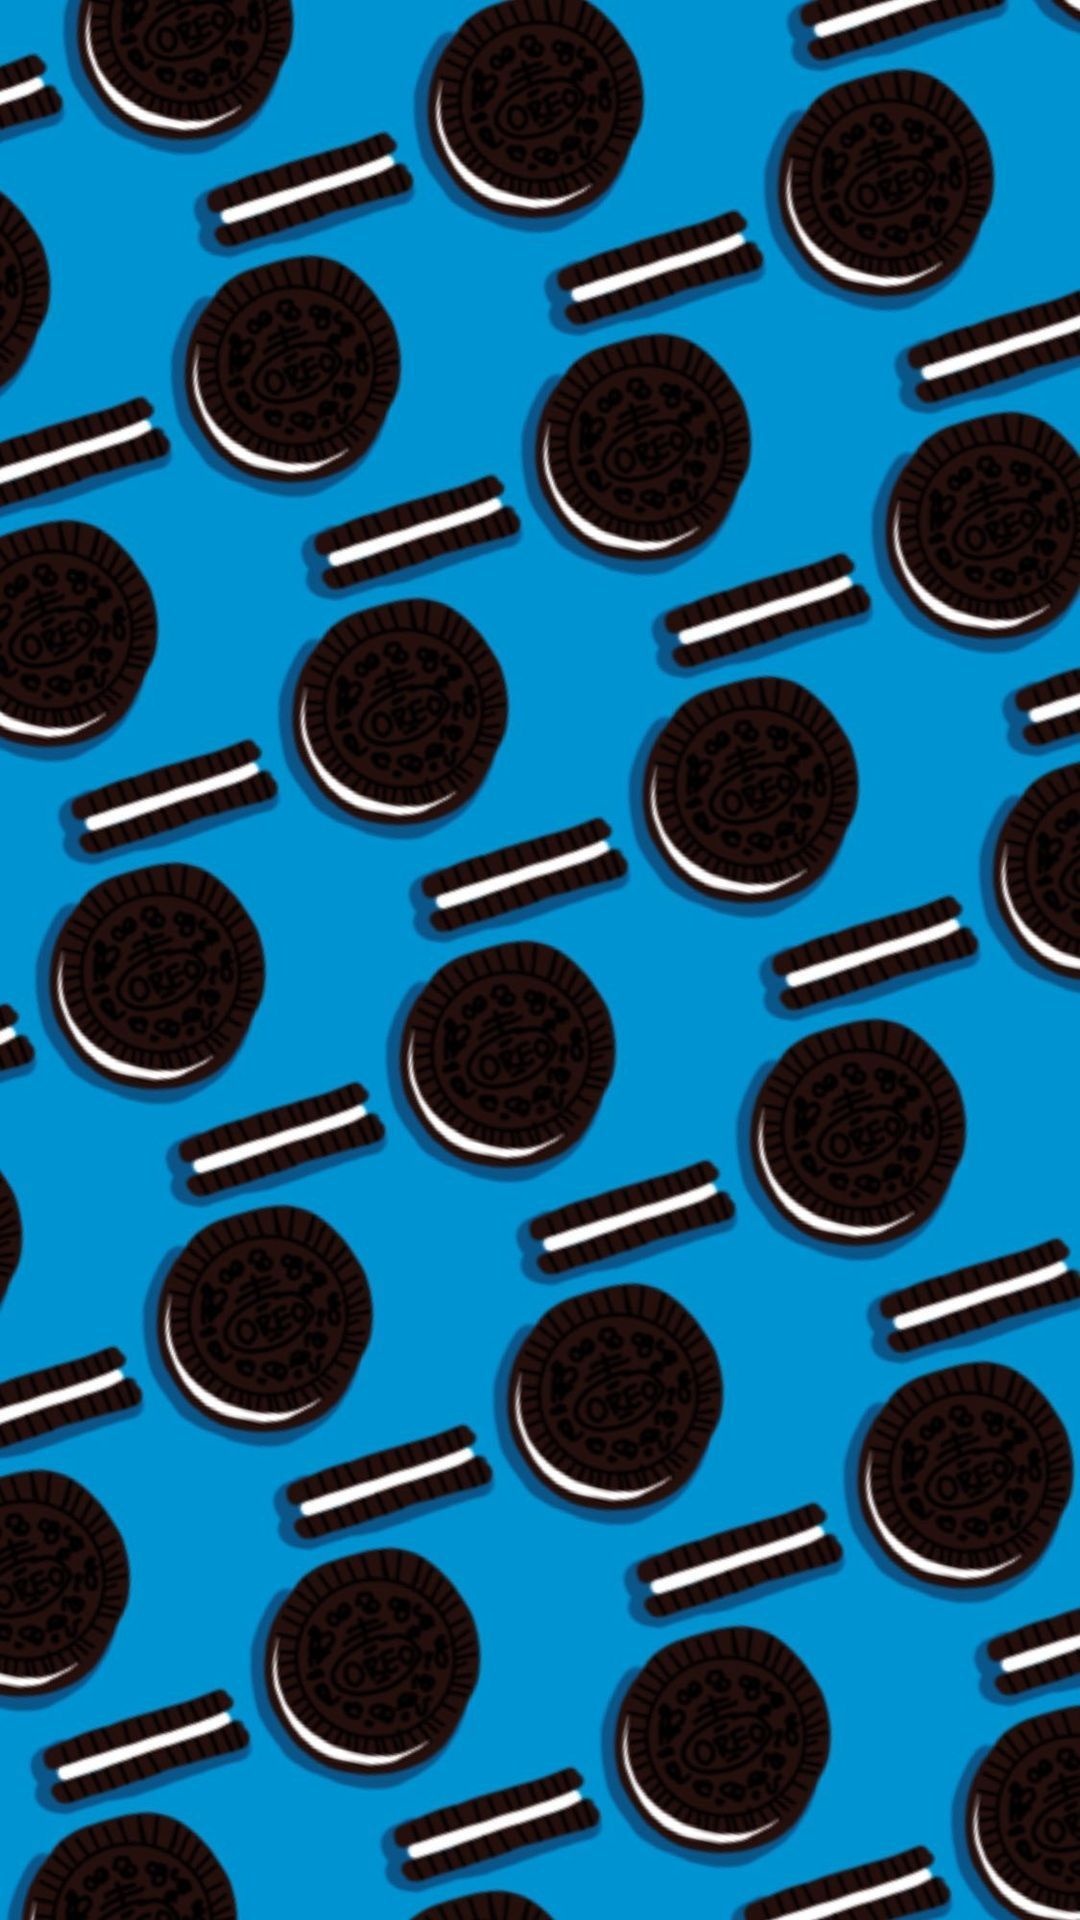 Oreo Cookies: Milk's favorite cookie, Baked good. 1080x1920 Full HD Wallpaper.